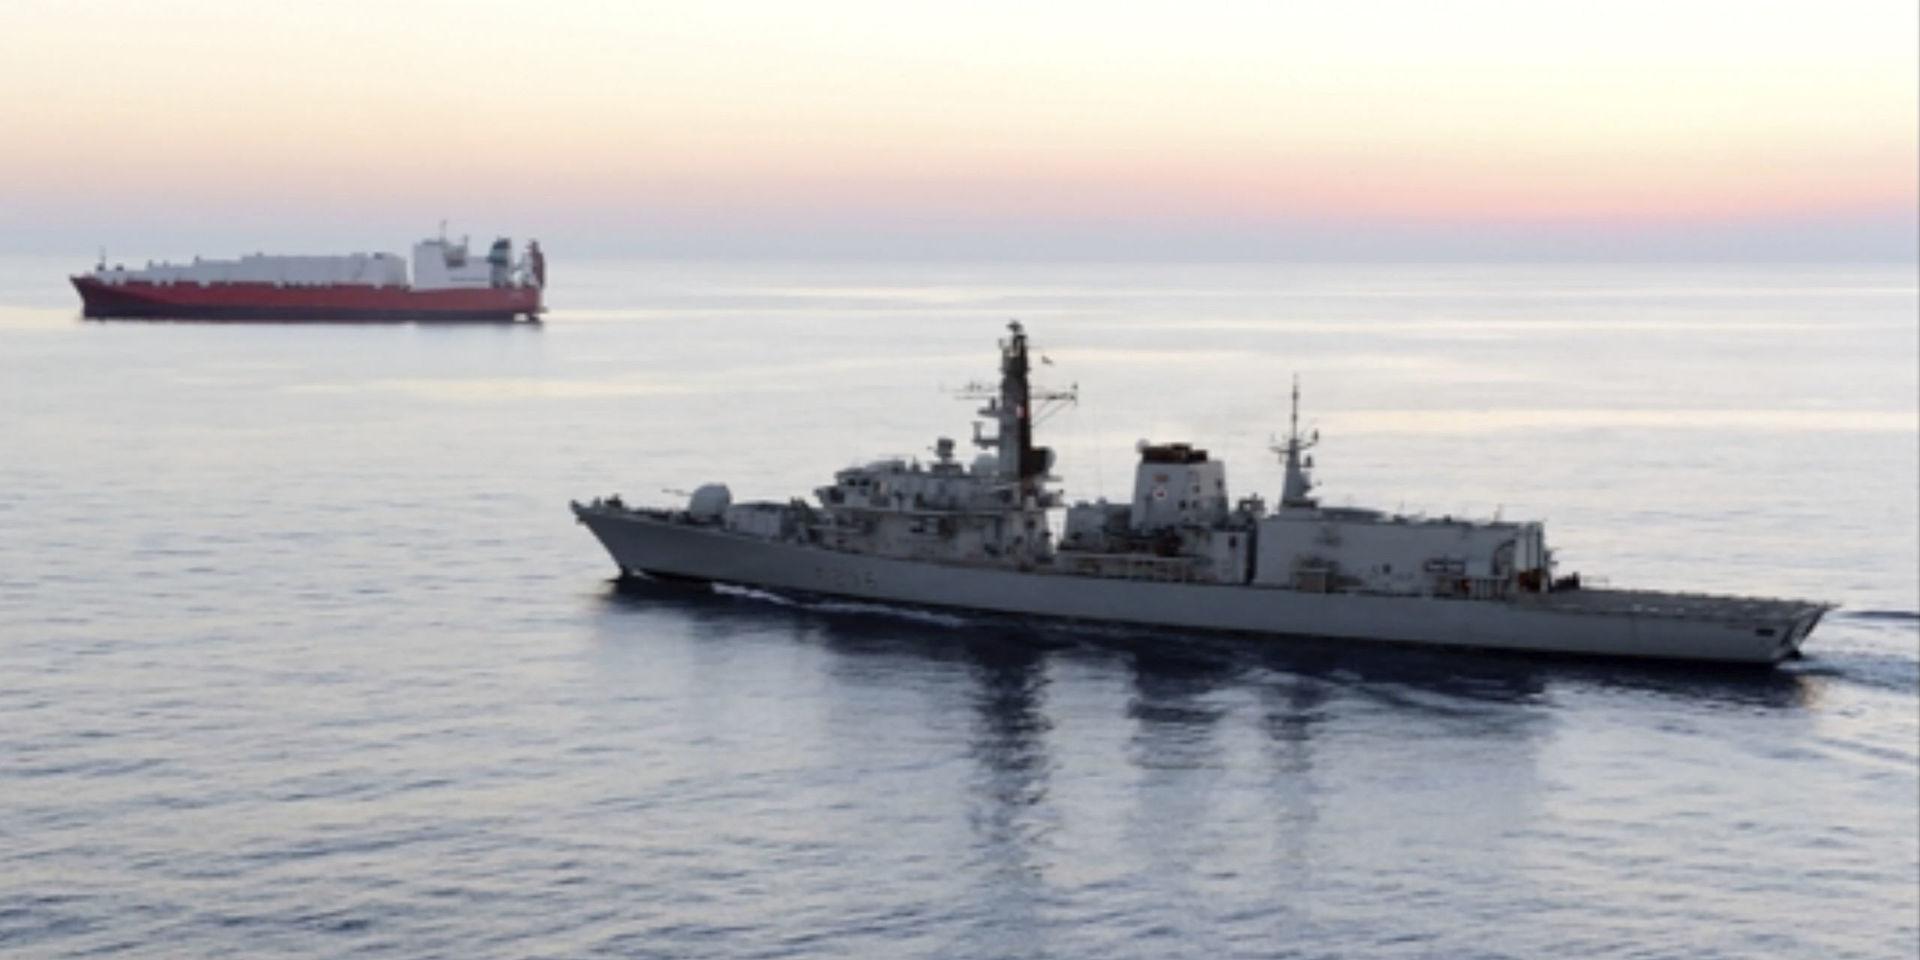 Fartyget HMS Montrose från den brittiska flottan ingrep för att förhindra beslagtagandet av oljetankern, enligt den brittiska regeringen. Arkivbild på fartyget från 2014.